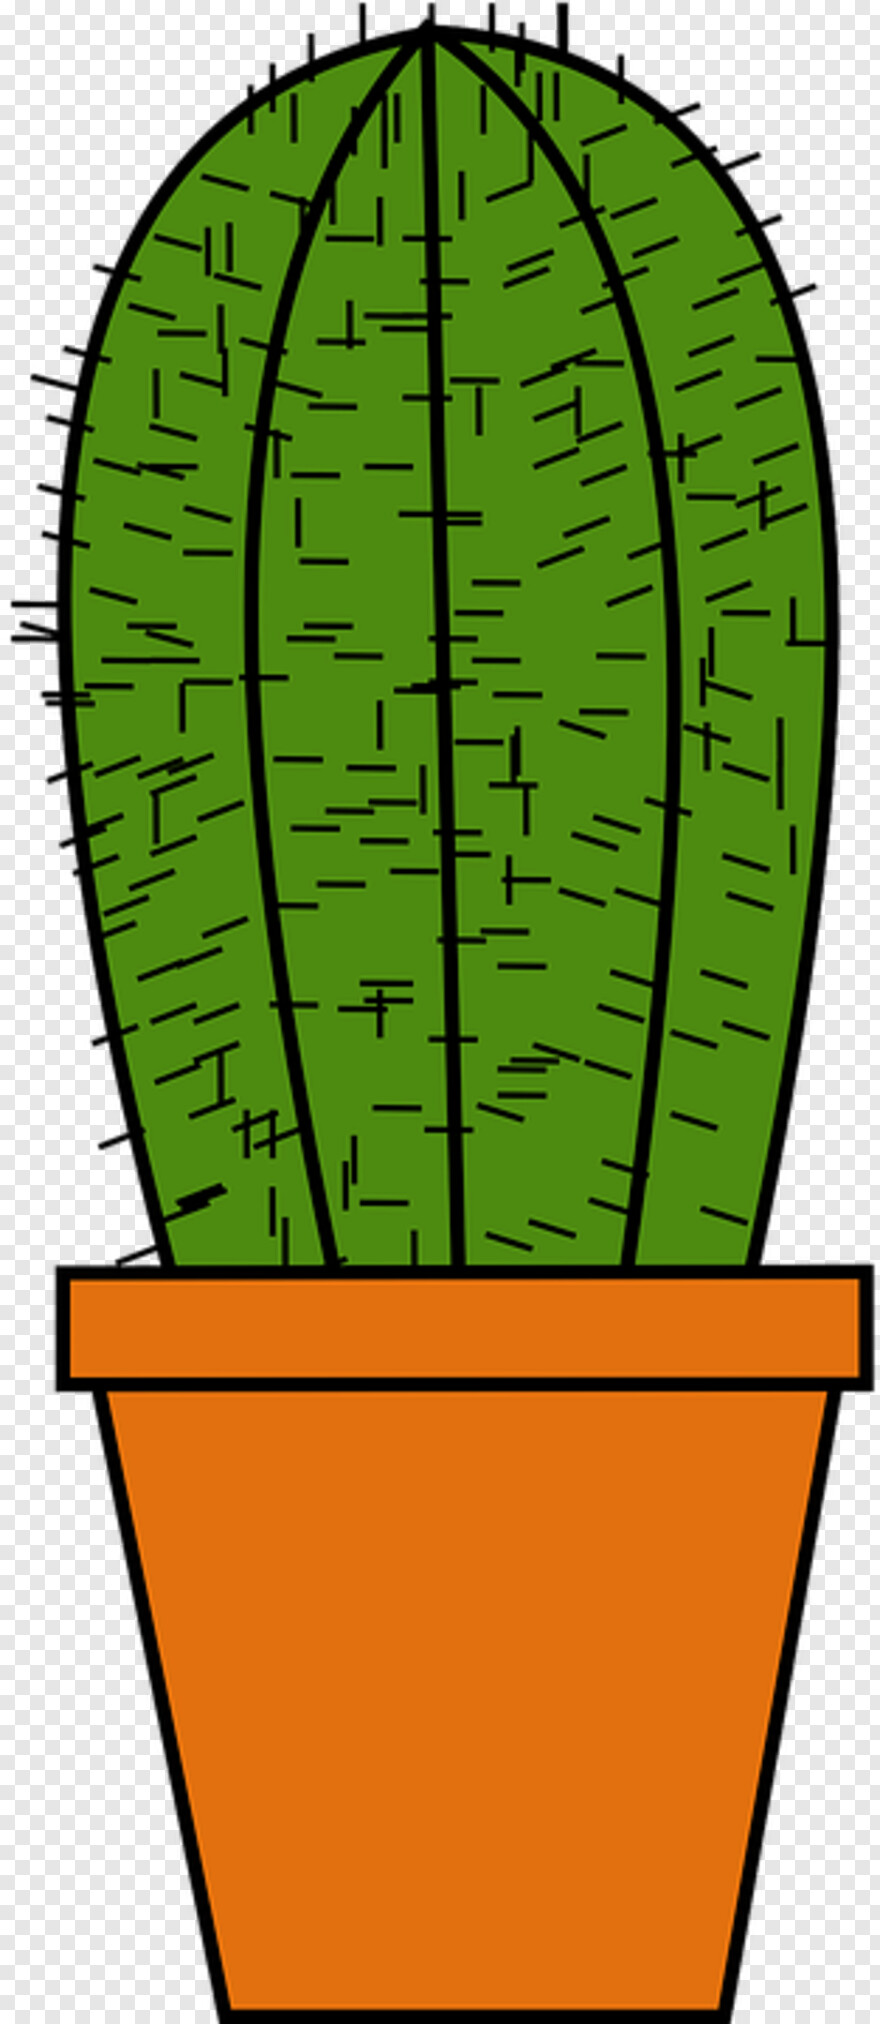 cactus-silhouette # 1088923